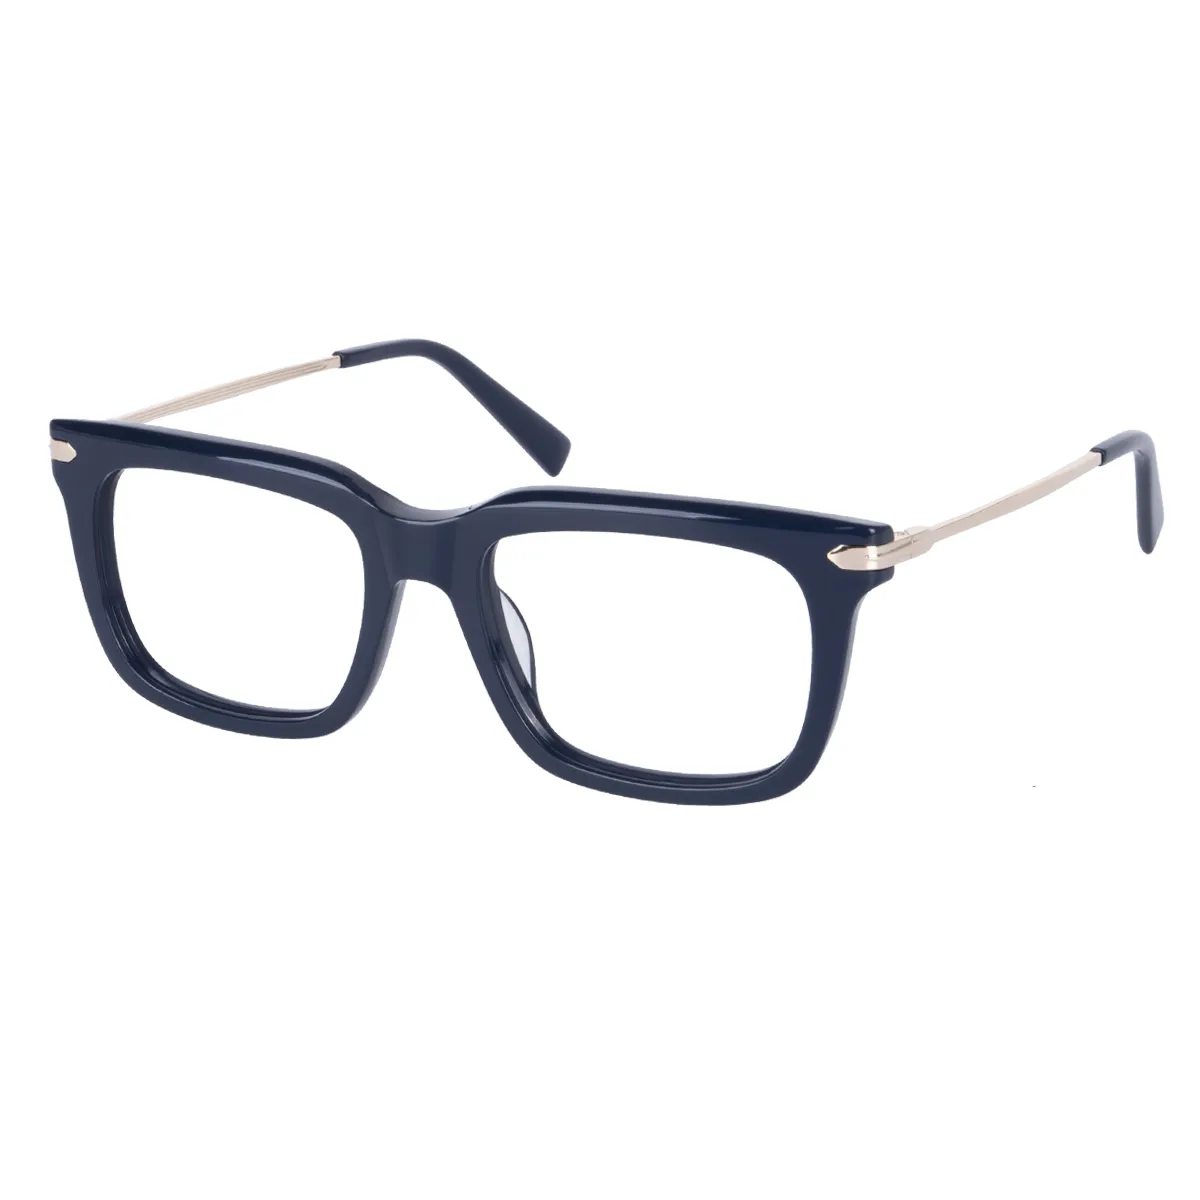 Bing - Square Blue Glasses for Men & Women